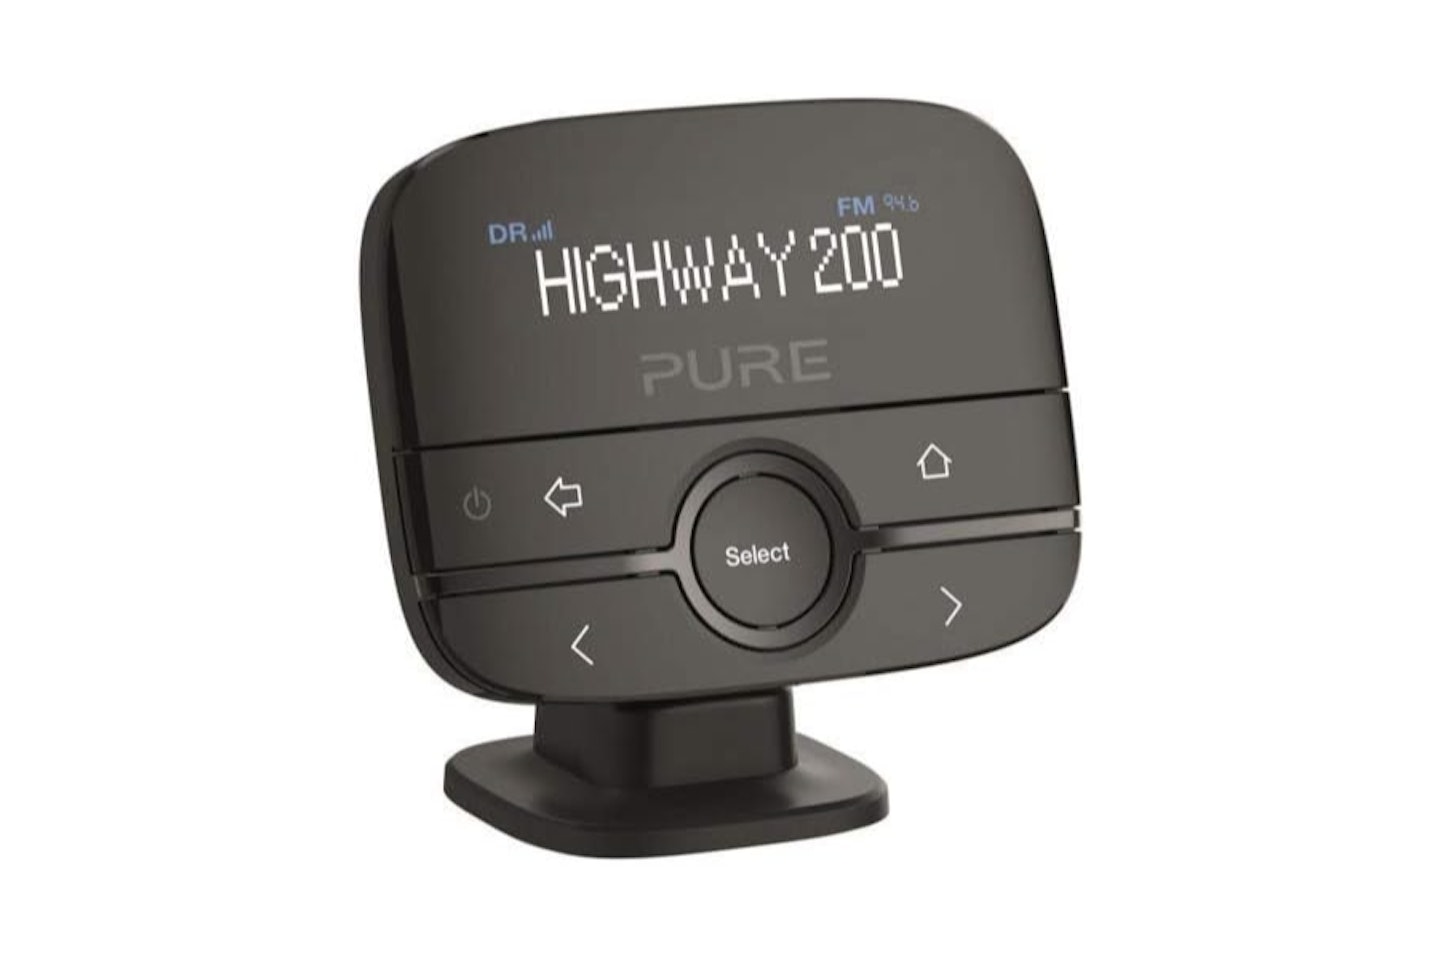 Pure Highway 200 In-Car DAB+/DAB Digital Radio FM Adapter